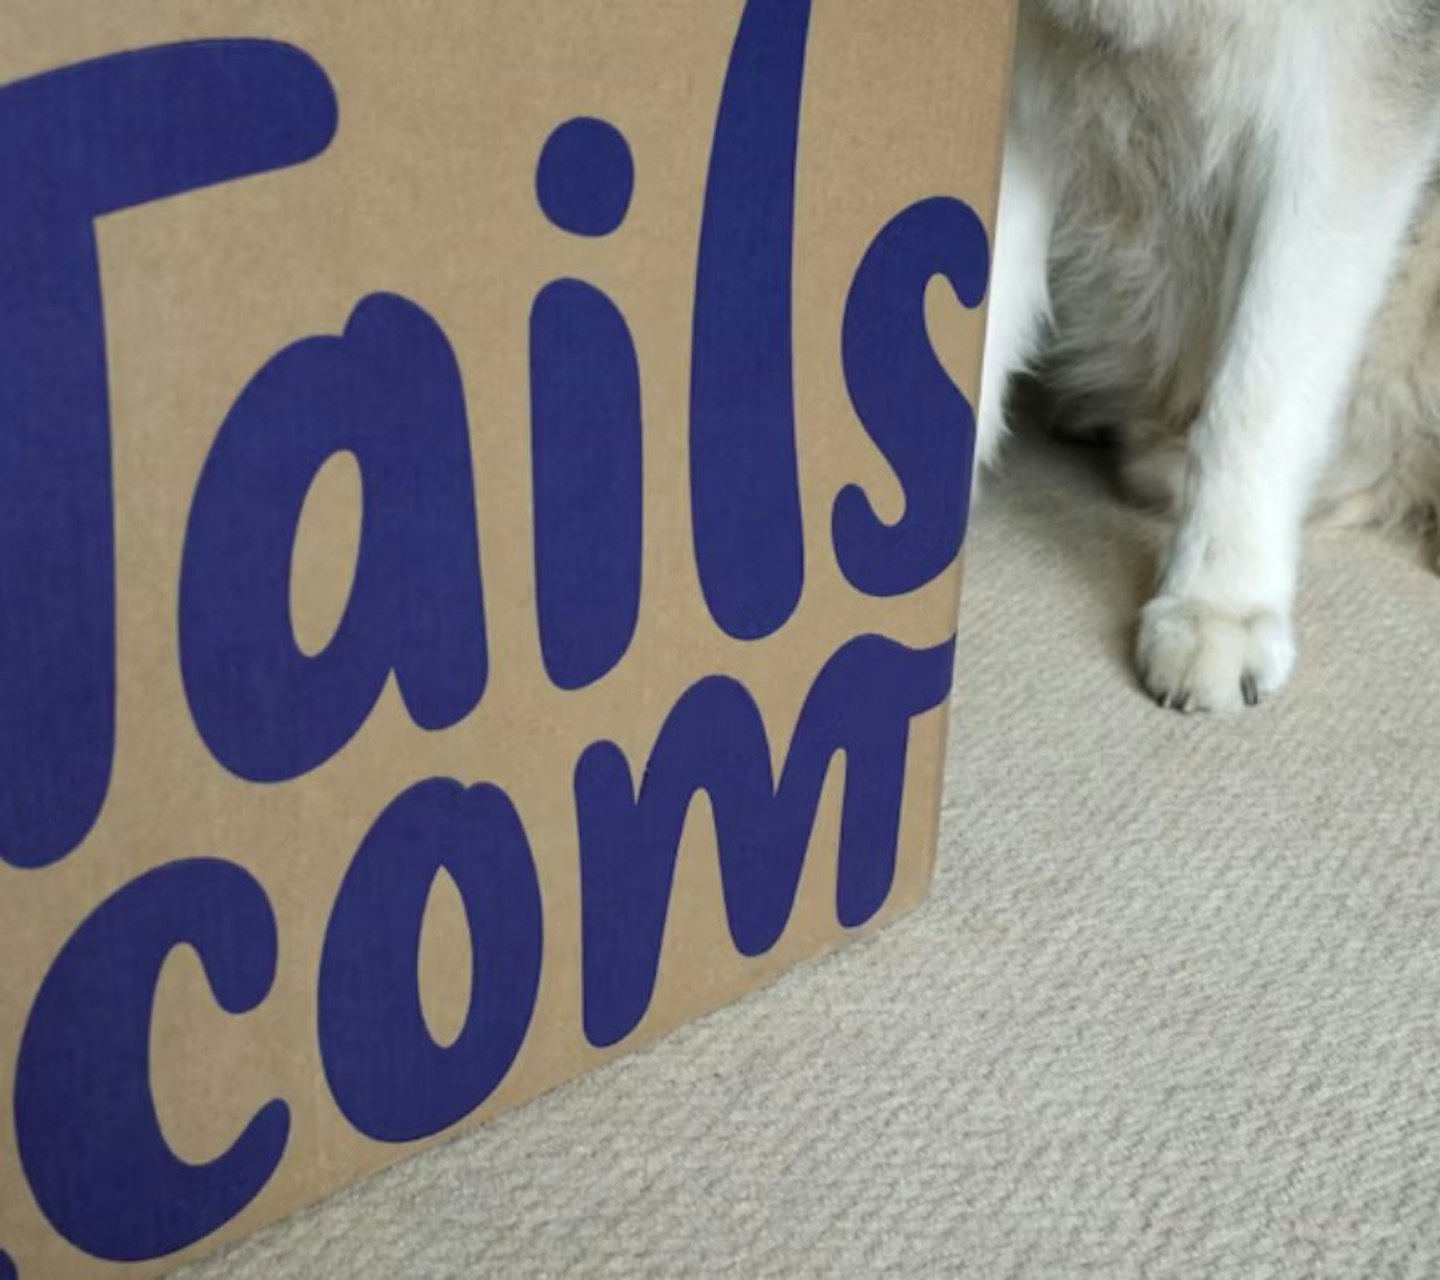 A box of Tails.com dry dog food 